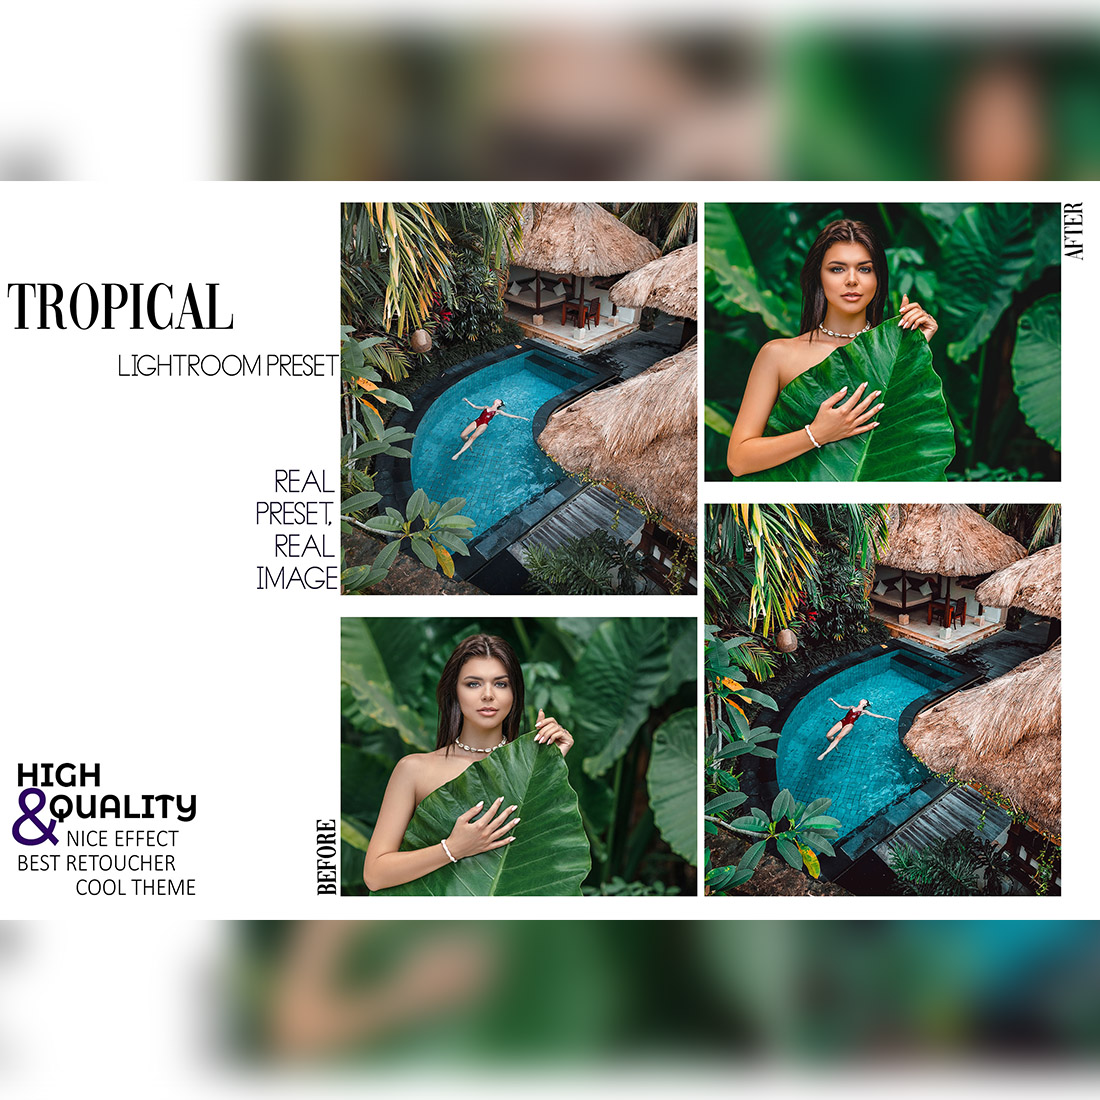 12 Jungle Fever Lightroom Presets, Tropical Mobile Preset, Moody Forest Desktop Lifestyle Portrait Theme For Instagram LR Filter DNG Natural preview image.